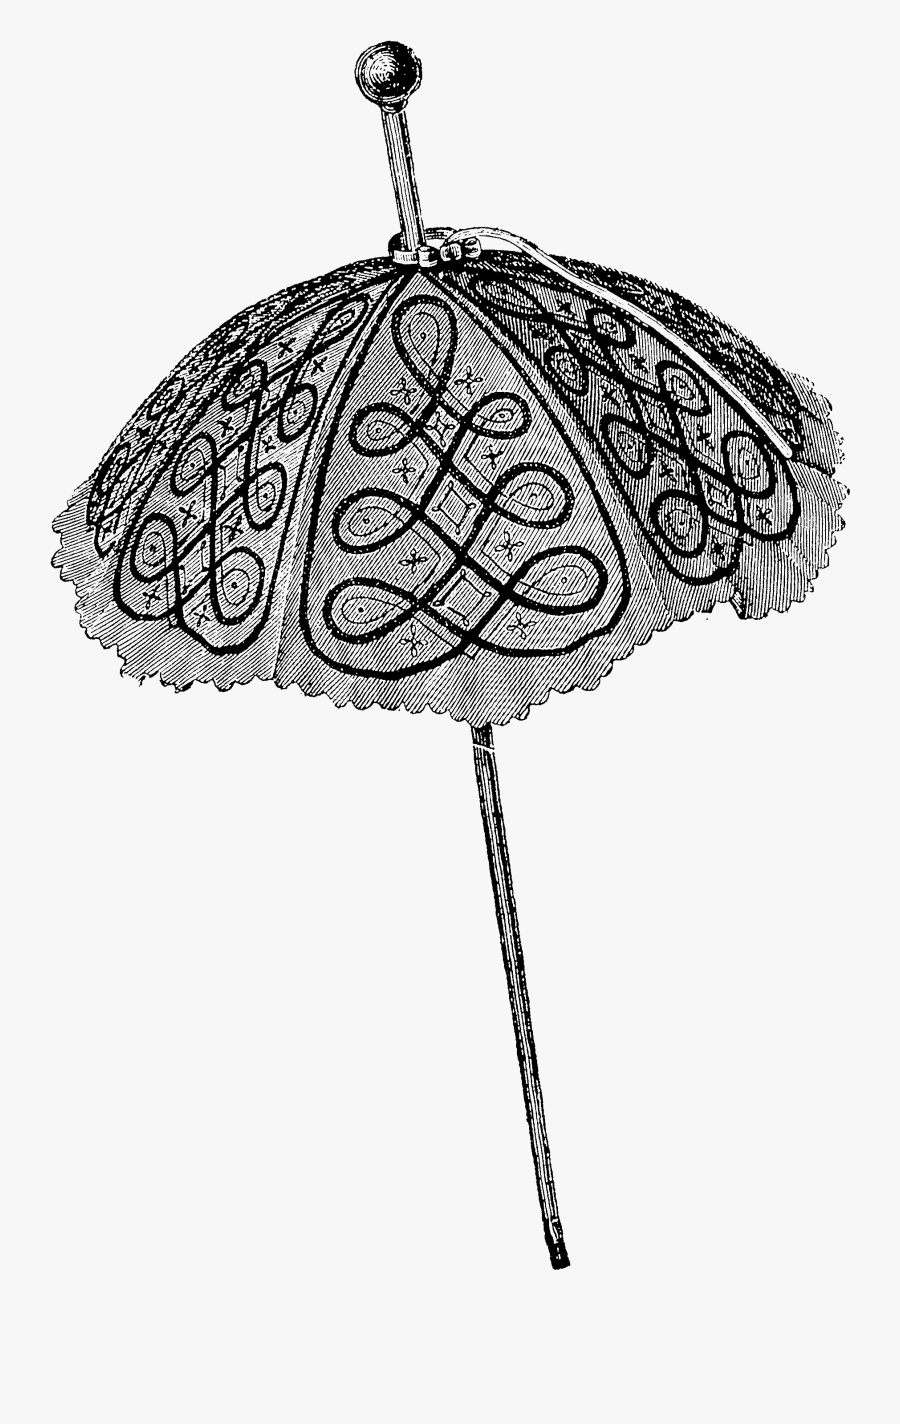 Victorian Era Umbrella Png, Transparent Clipart